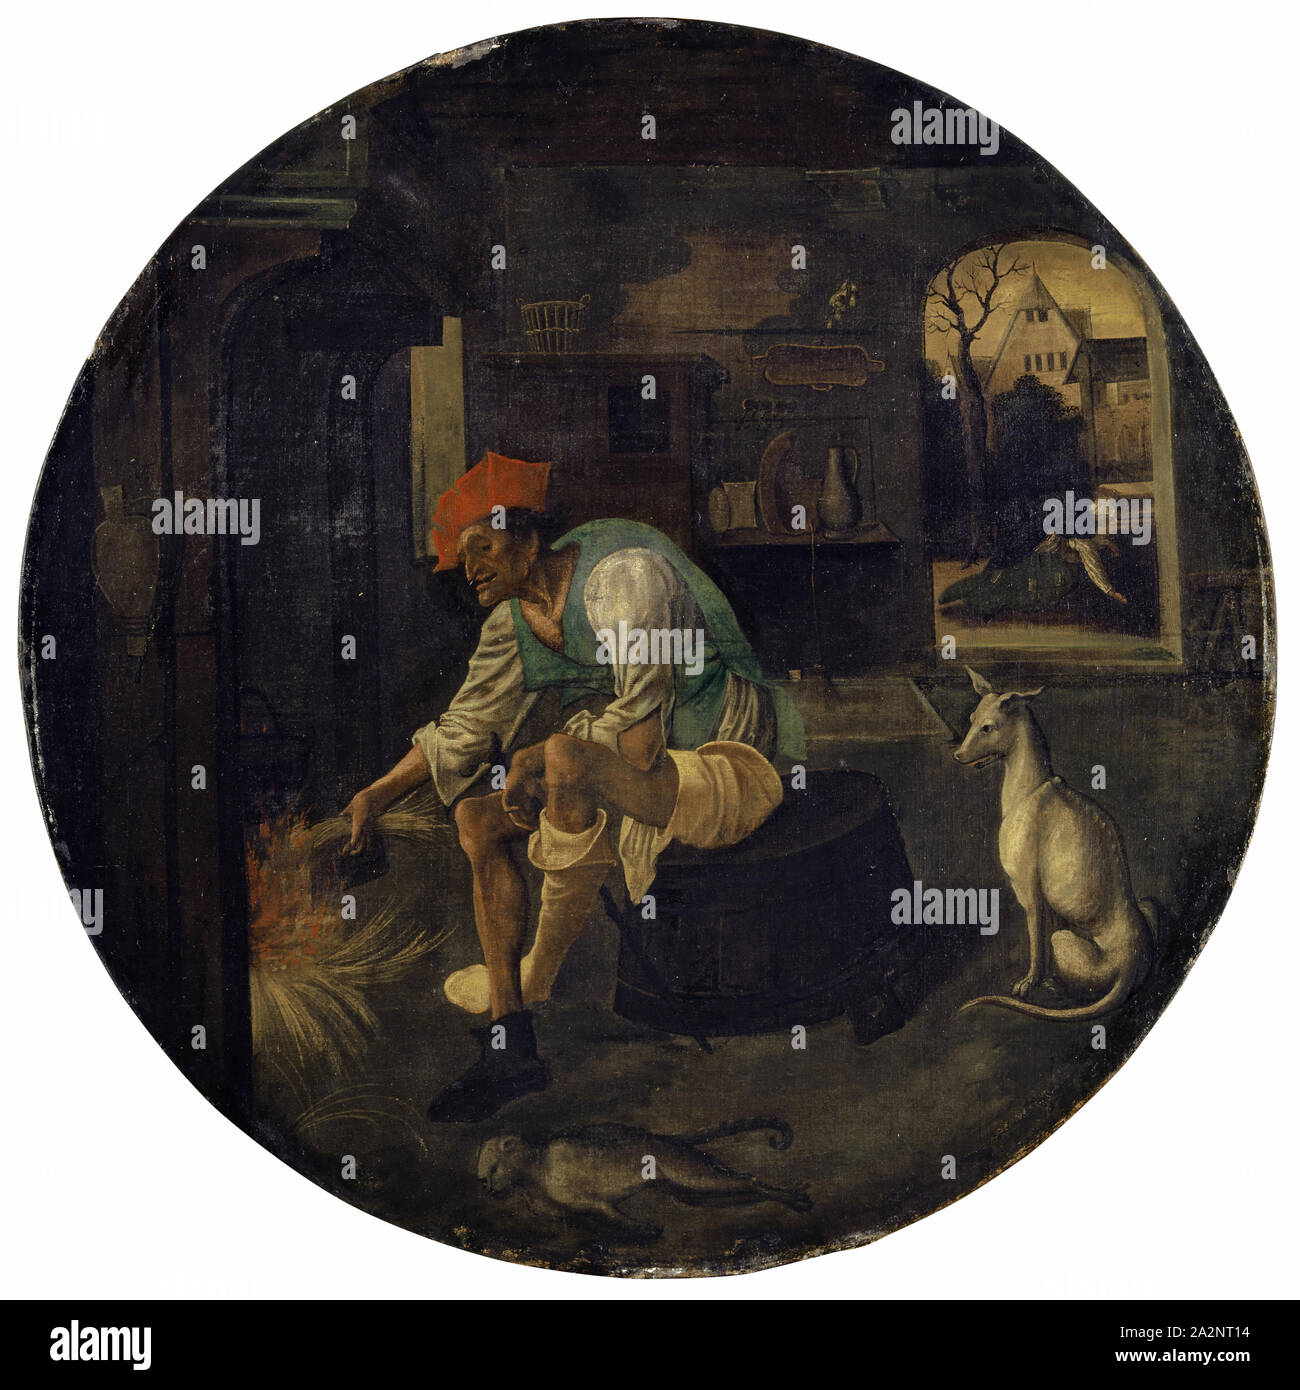 Le fils perdu dans la misère, ch. 1520, tempera sur toile non apprêtée (petite peinture), 79,8 x 79,8 cm, non marqué, Niederländischer Meister, 16. Jh Banque D'Images